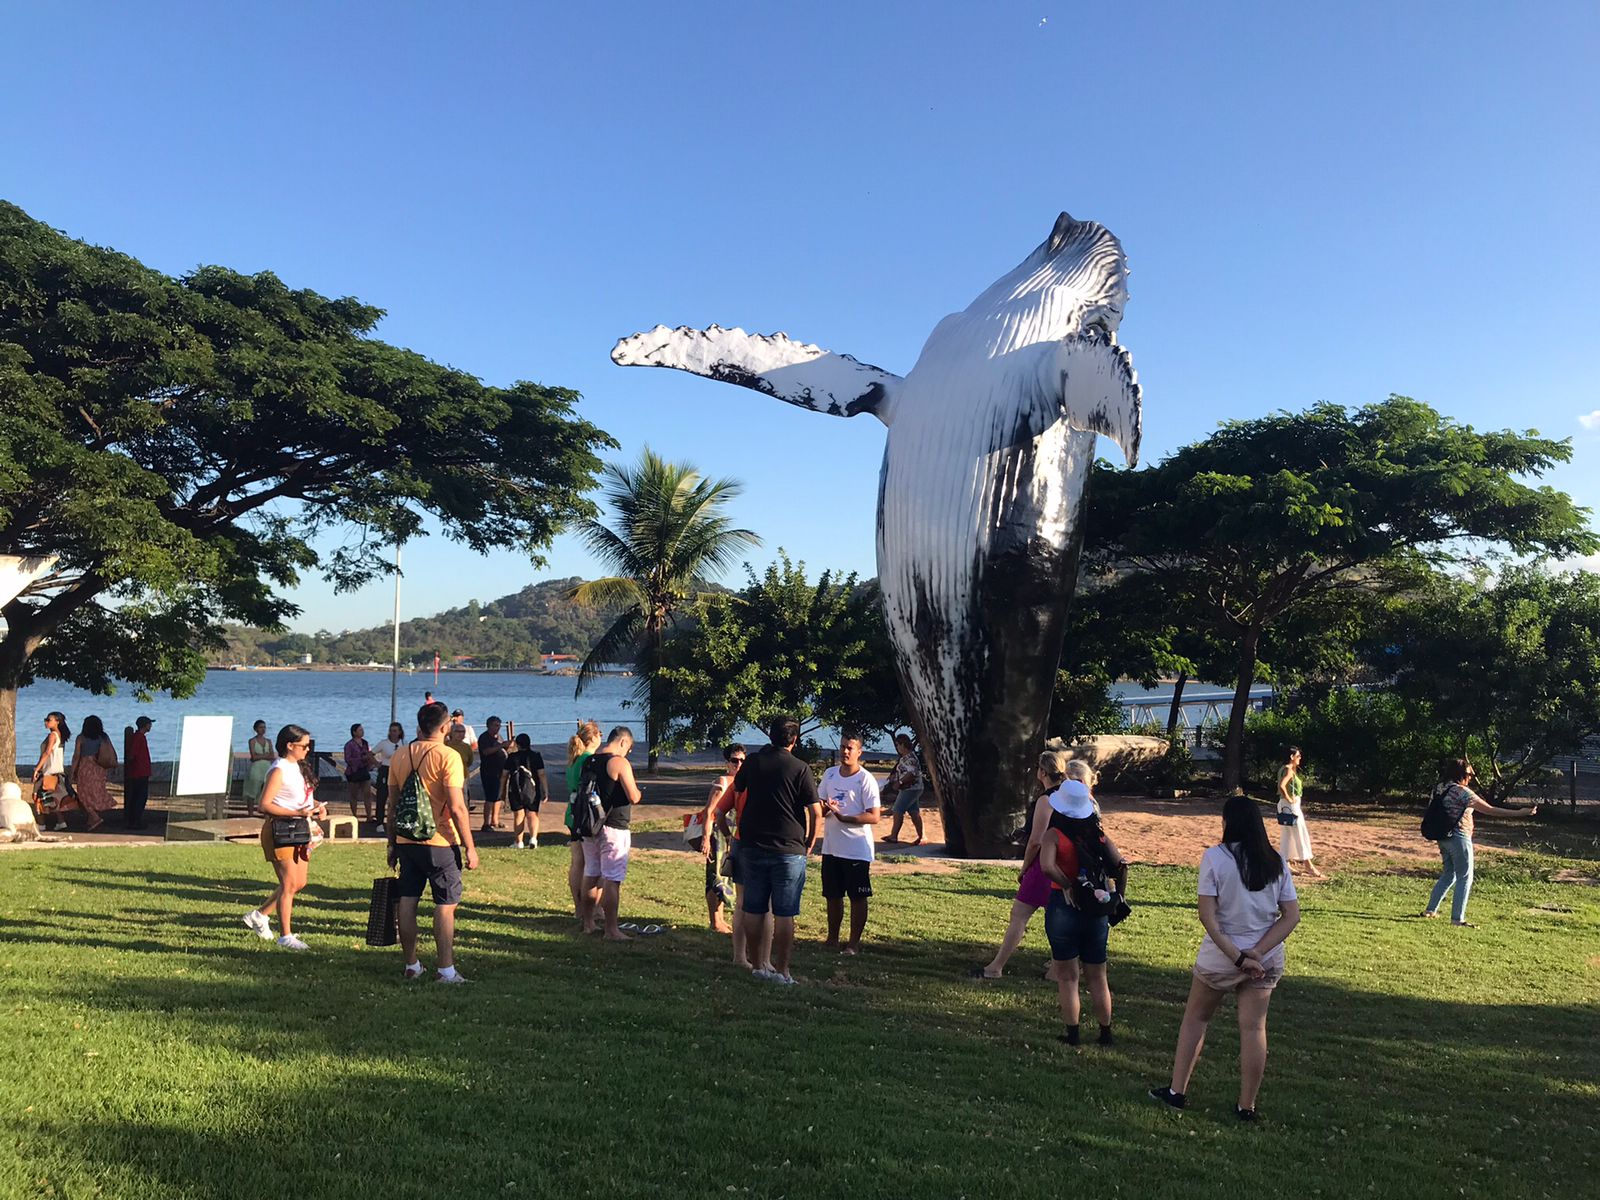 Instalada na sede do Projeto Baleia Jubarte, em Vitória, a escultura celebra as gigantes do mar, que visitam a costa do Estado